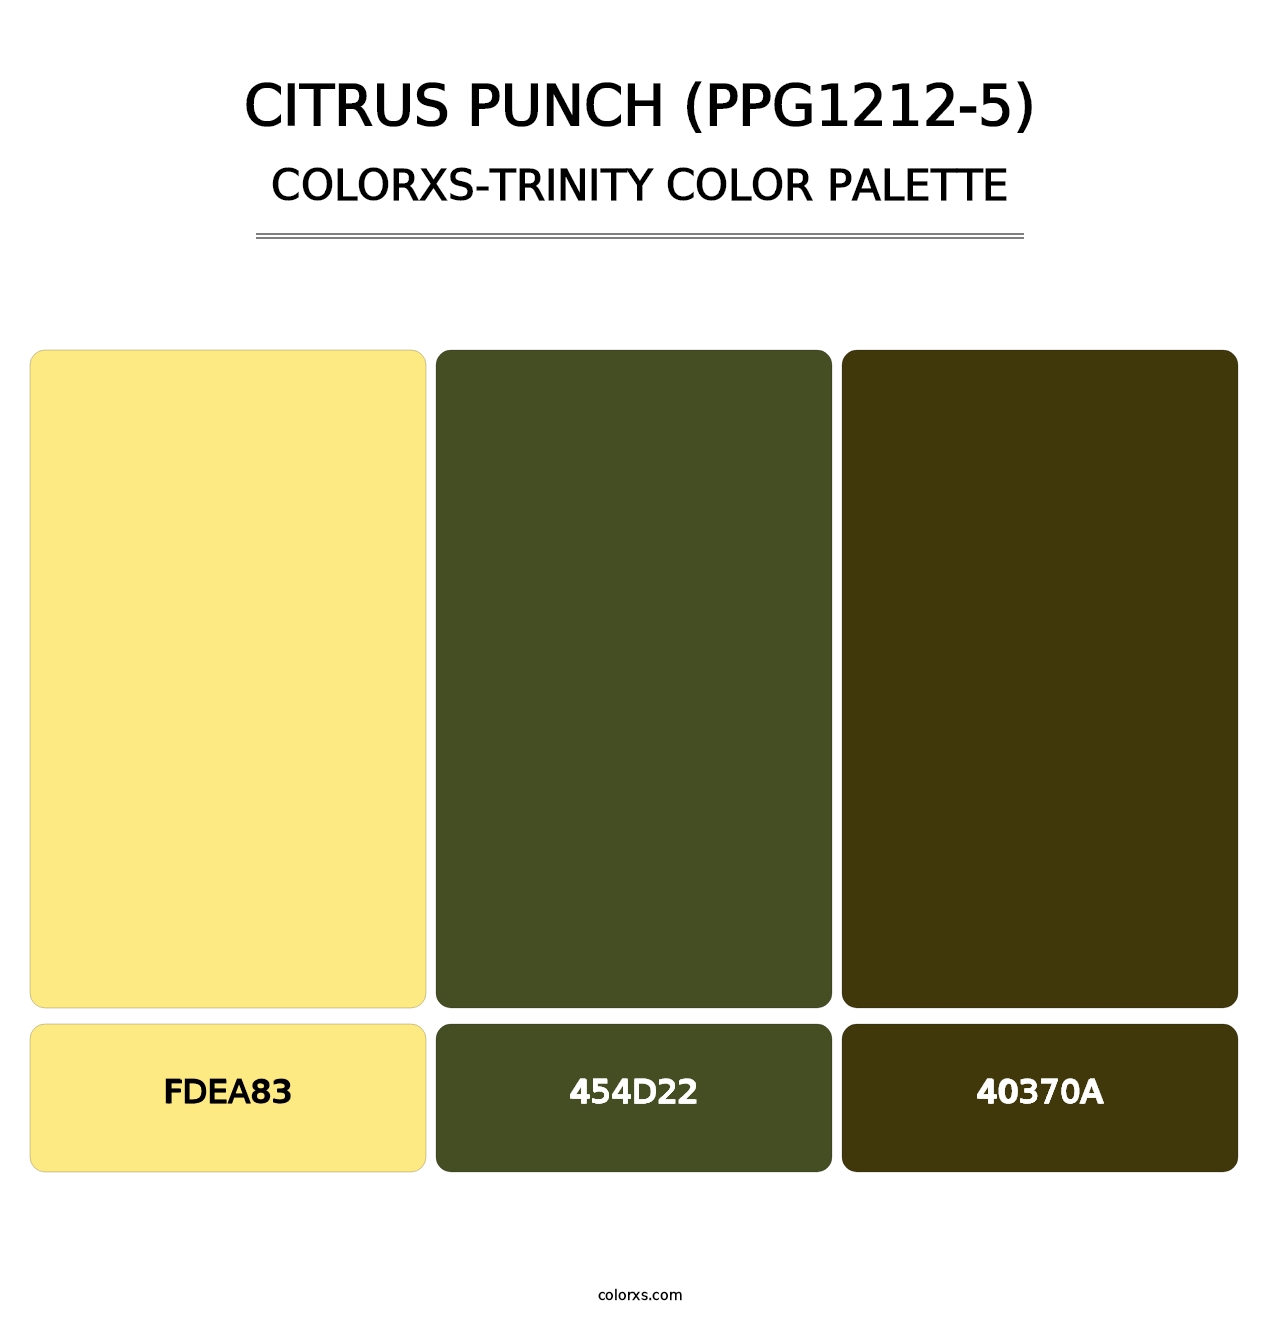 Citrus Punch (PPG1212-5) - Colorxs Trinity Palette